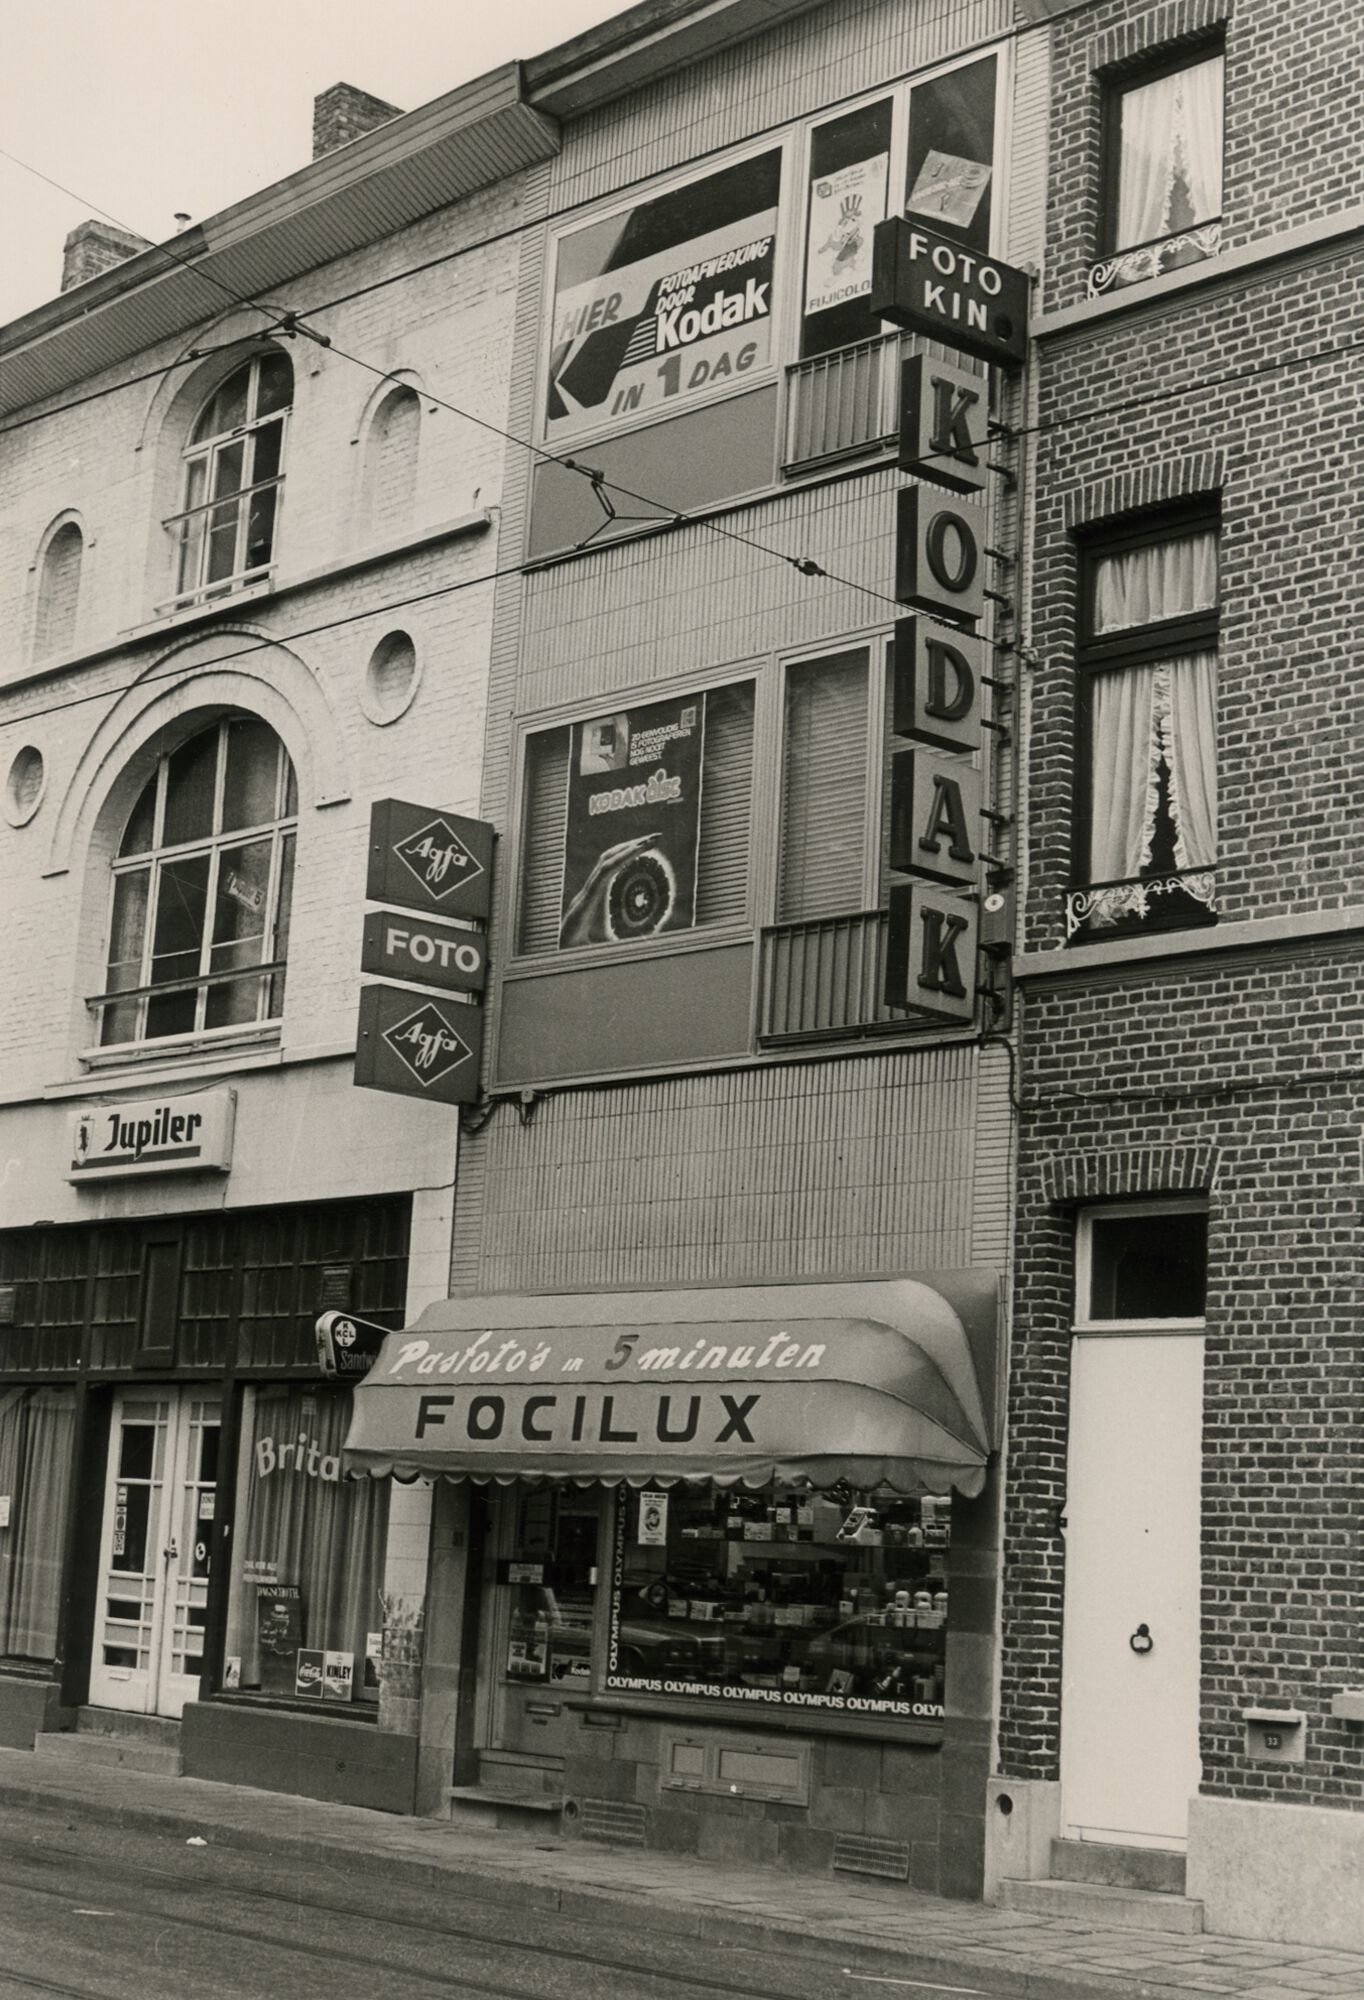 Etalage van fotografiewinkel Focilux in Gent